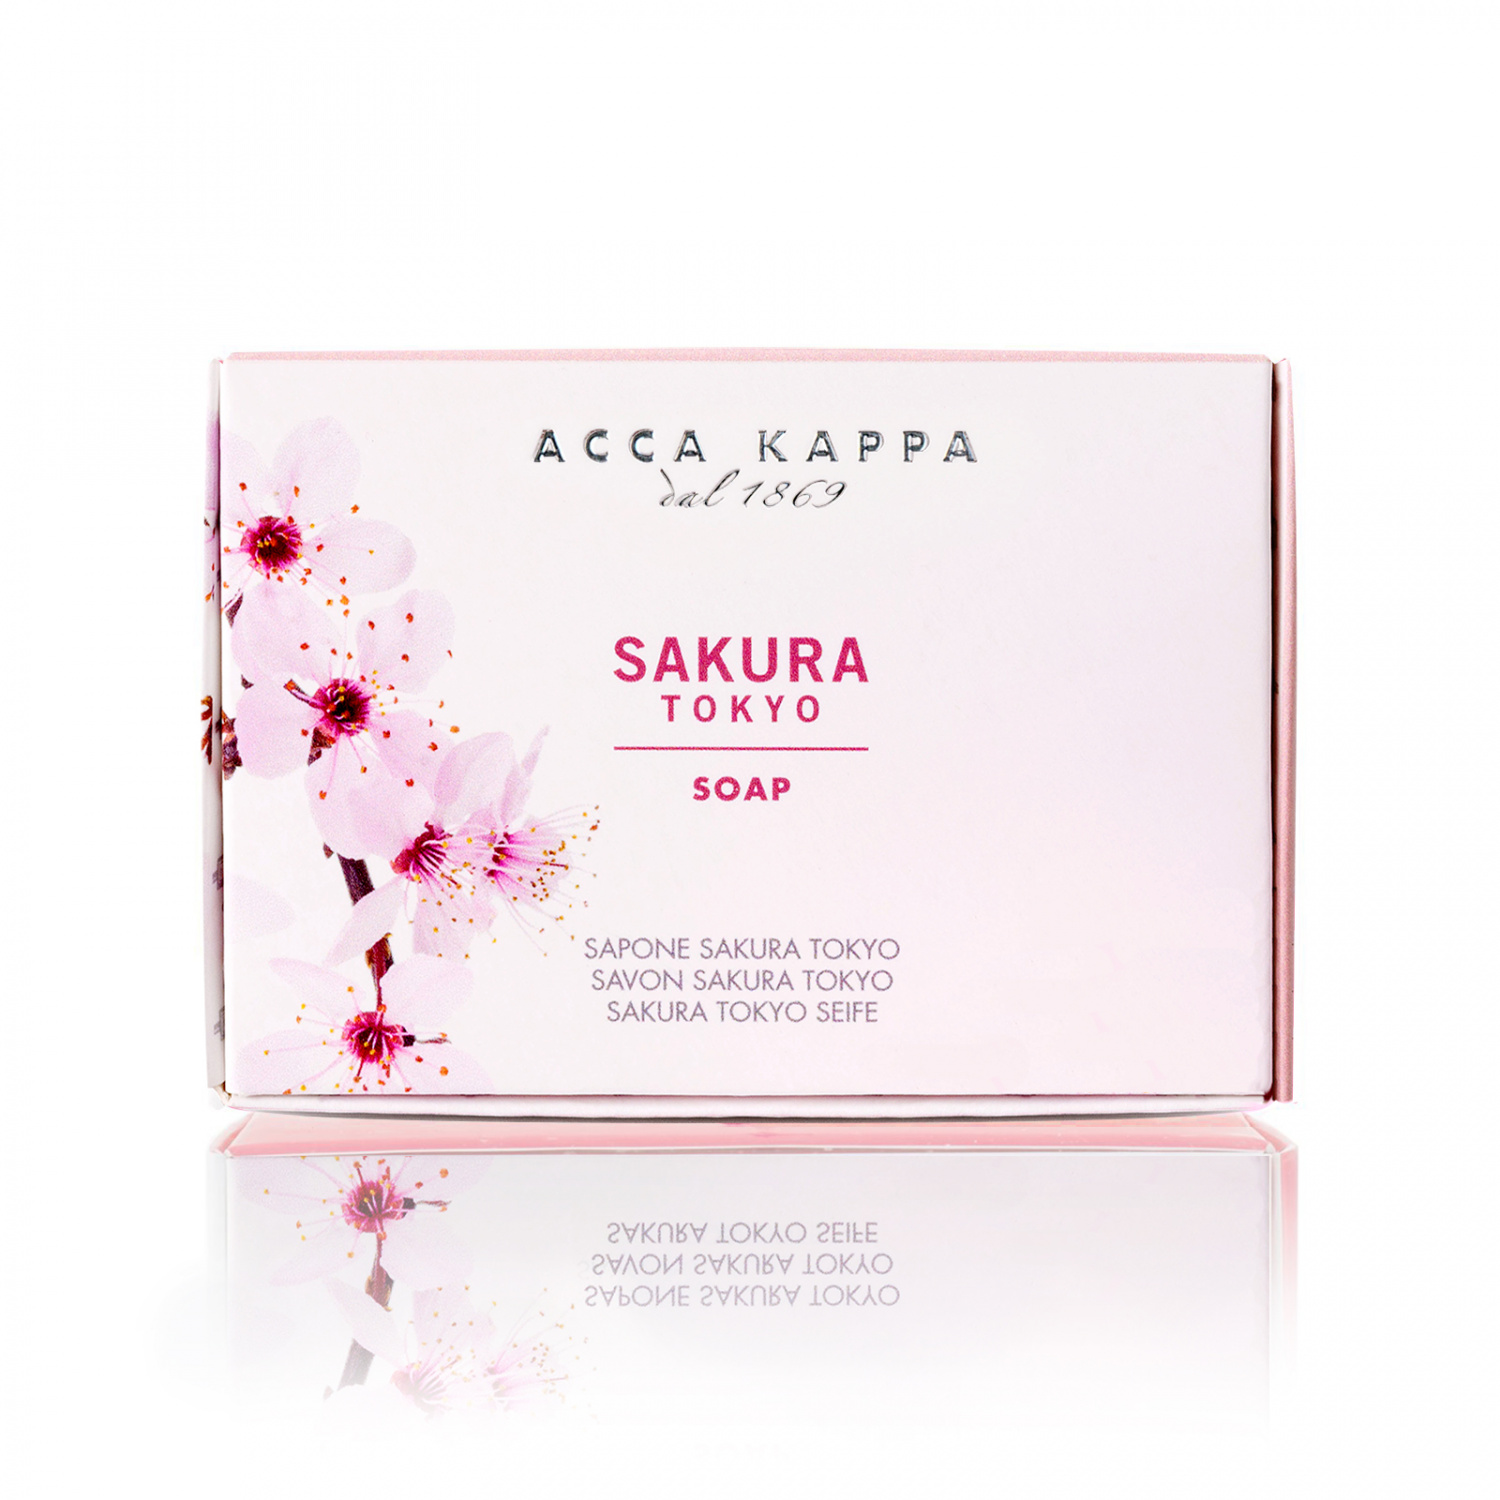 Acca Kappa Sakura Tokyo Soap 150g - интернет-магазин профессиональной косметики Spadream, изображение 38857